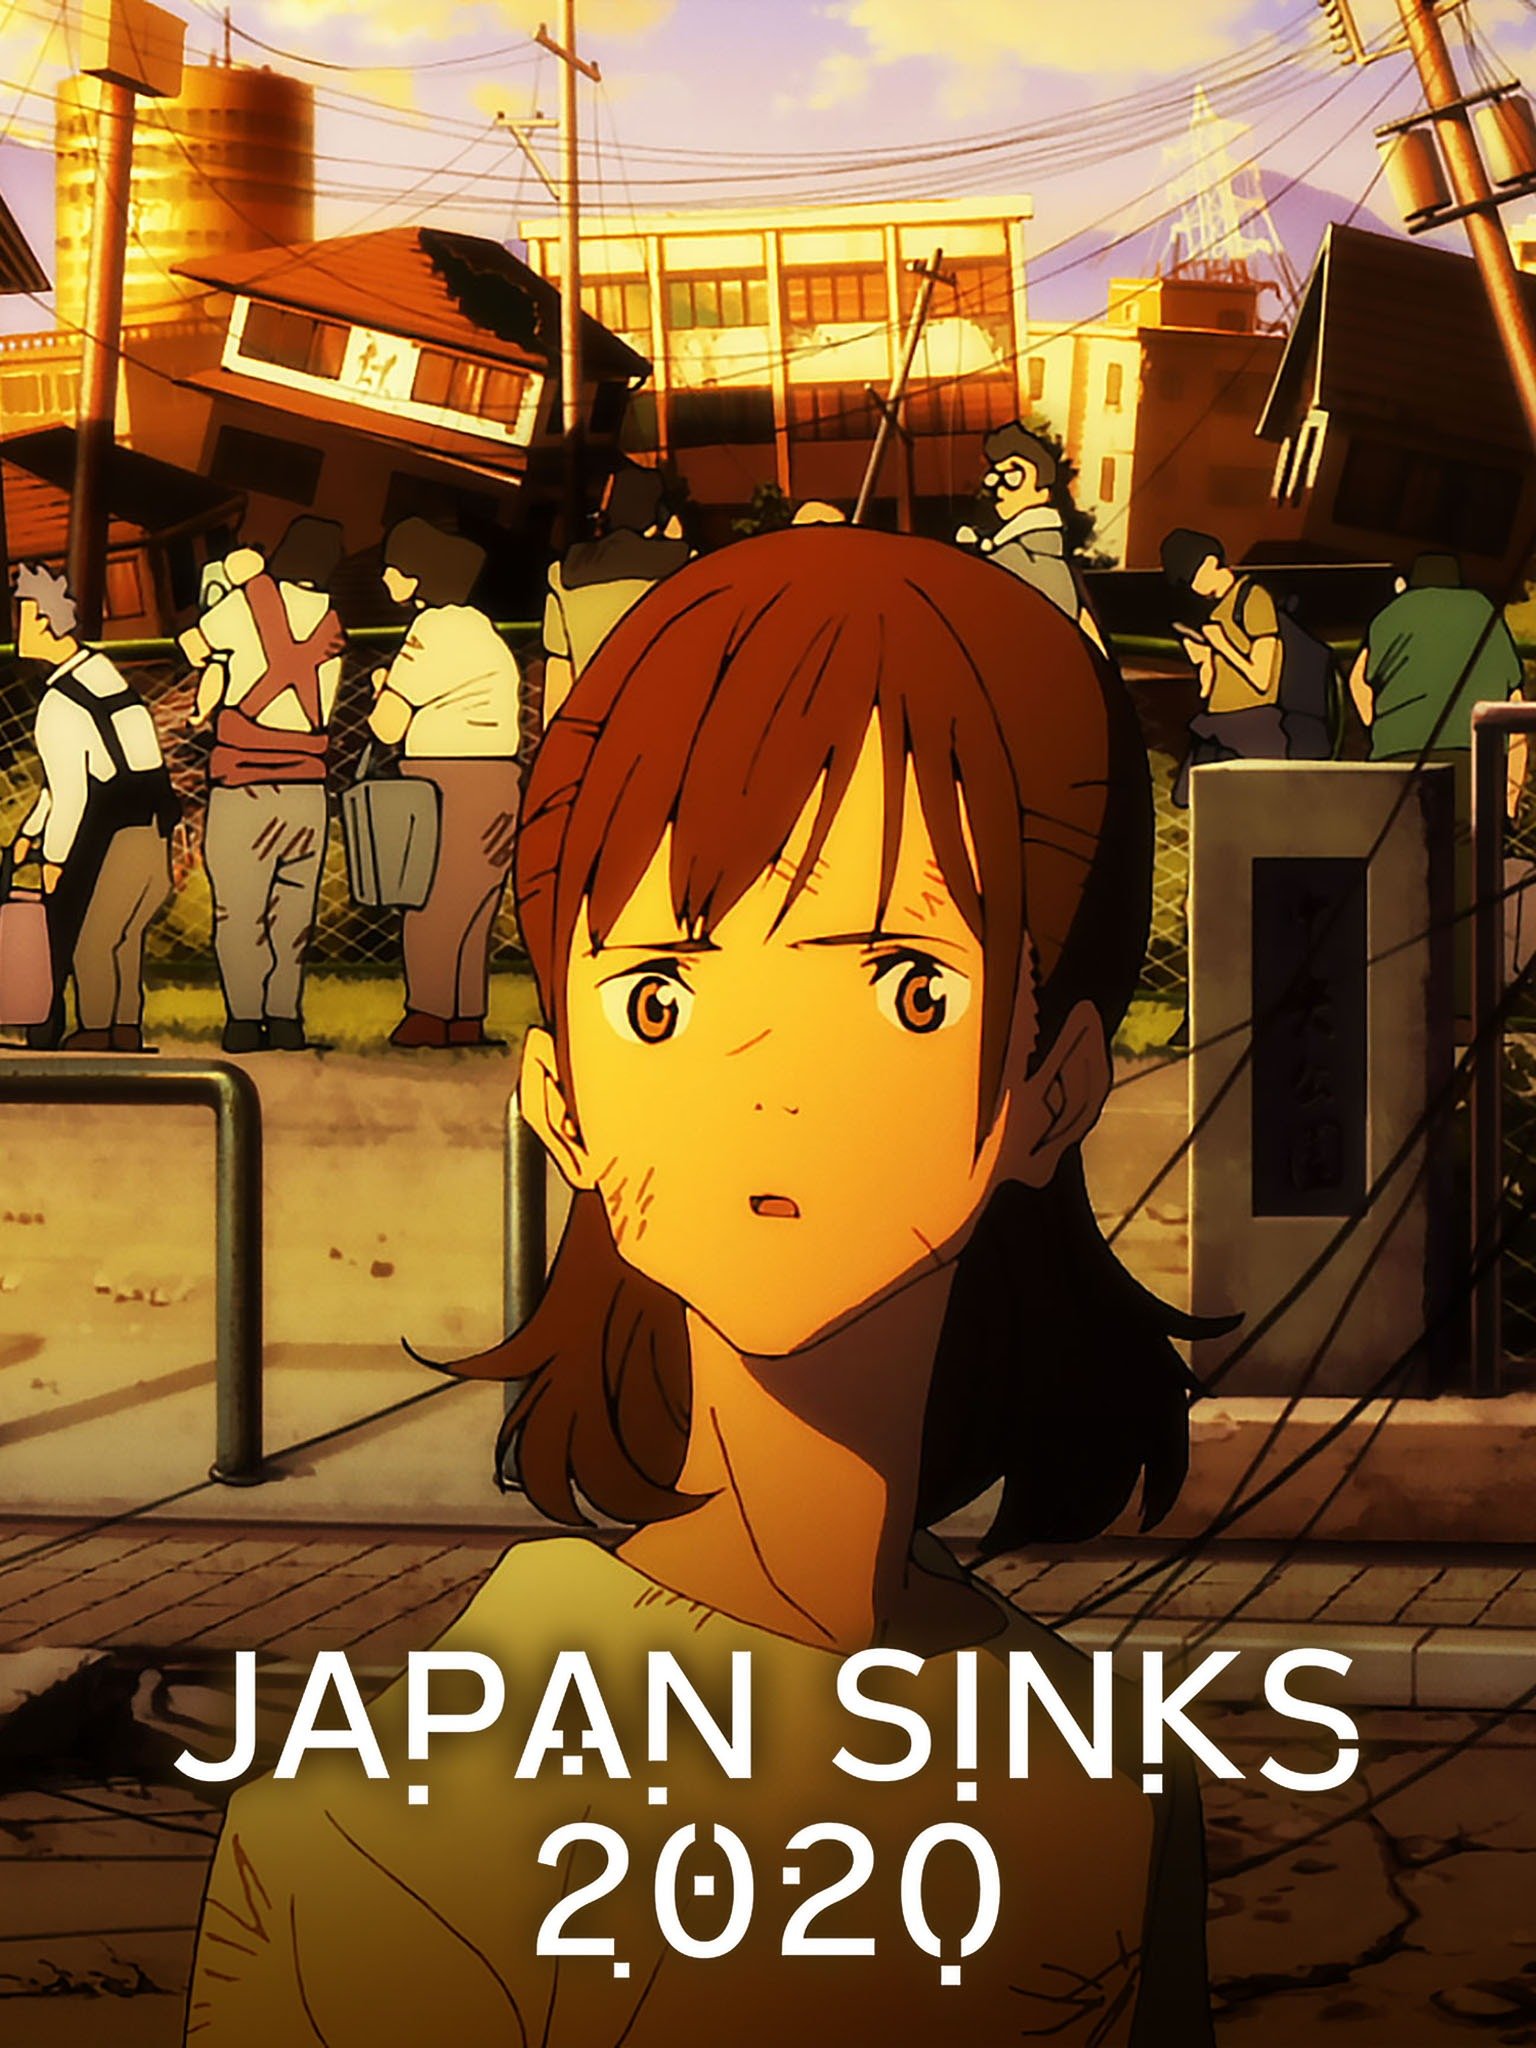 Japan Sinks: 2020 (TV Mini Series 2020) - IMDb